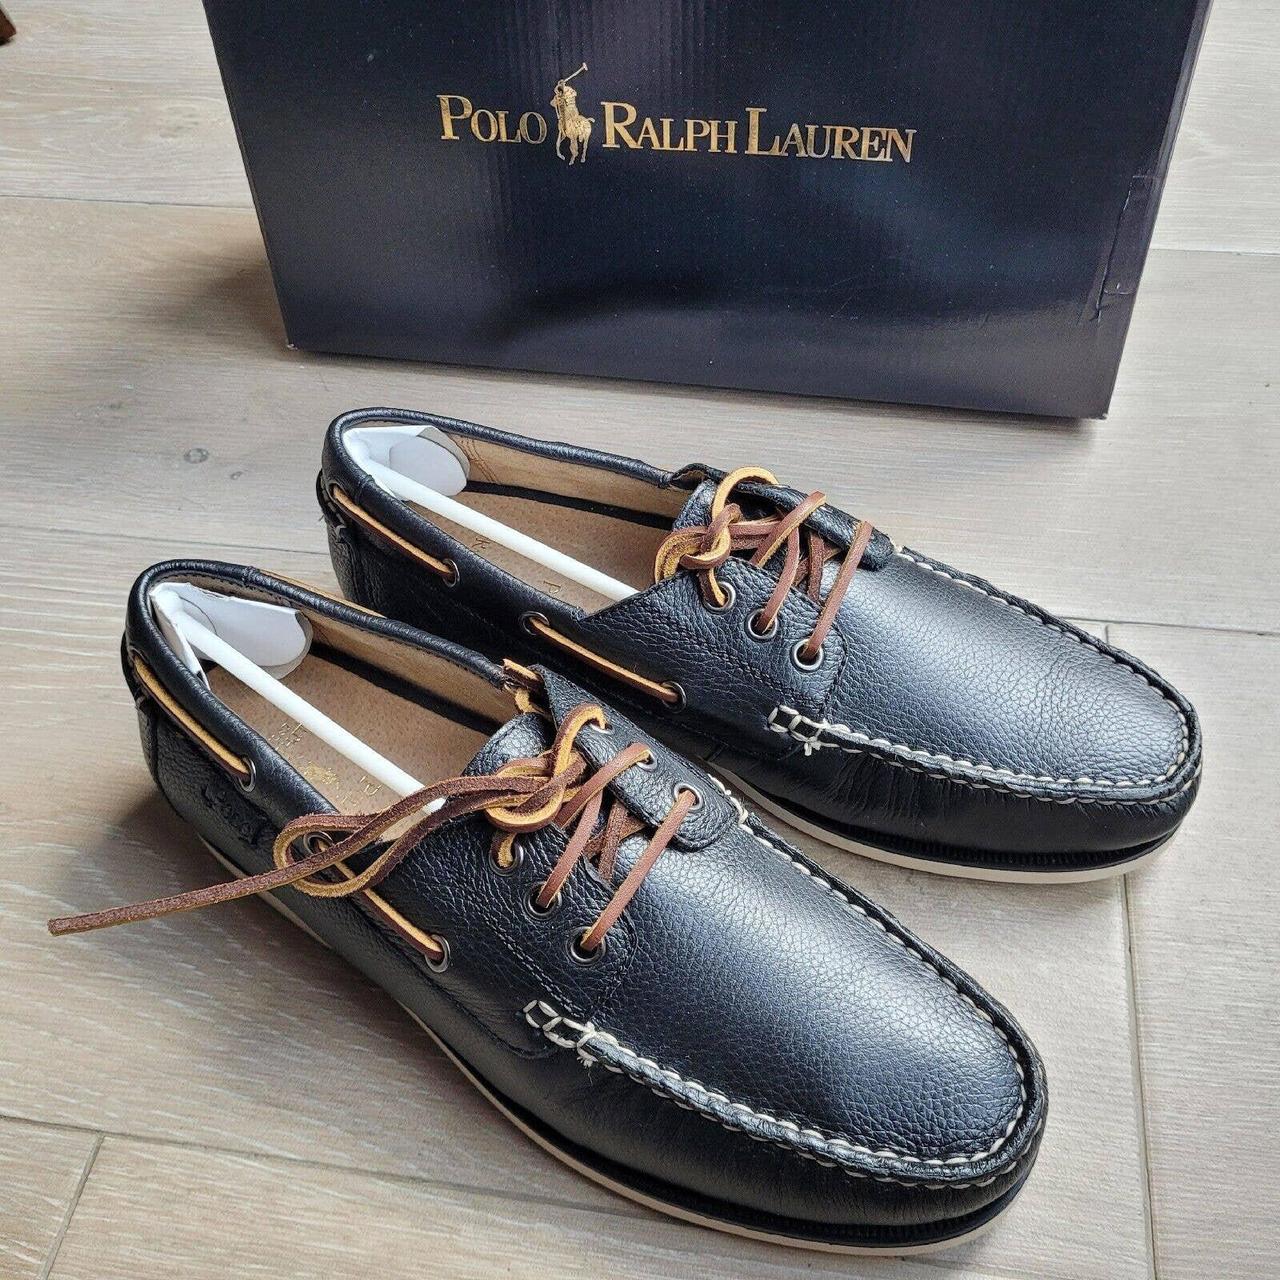 Polo Ralph Lauren Men's Bienne Boat Shoe Size 9.5 D... - Depop